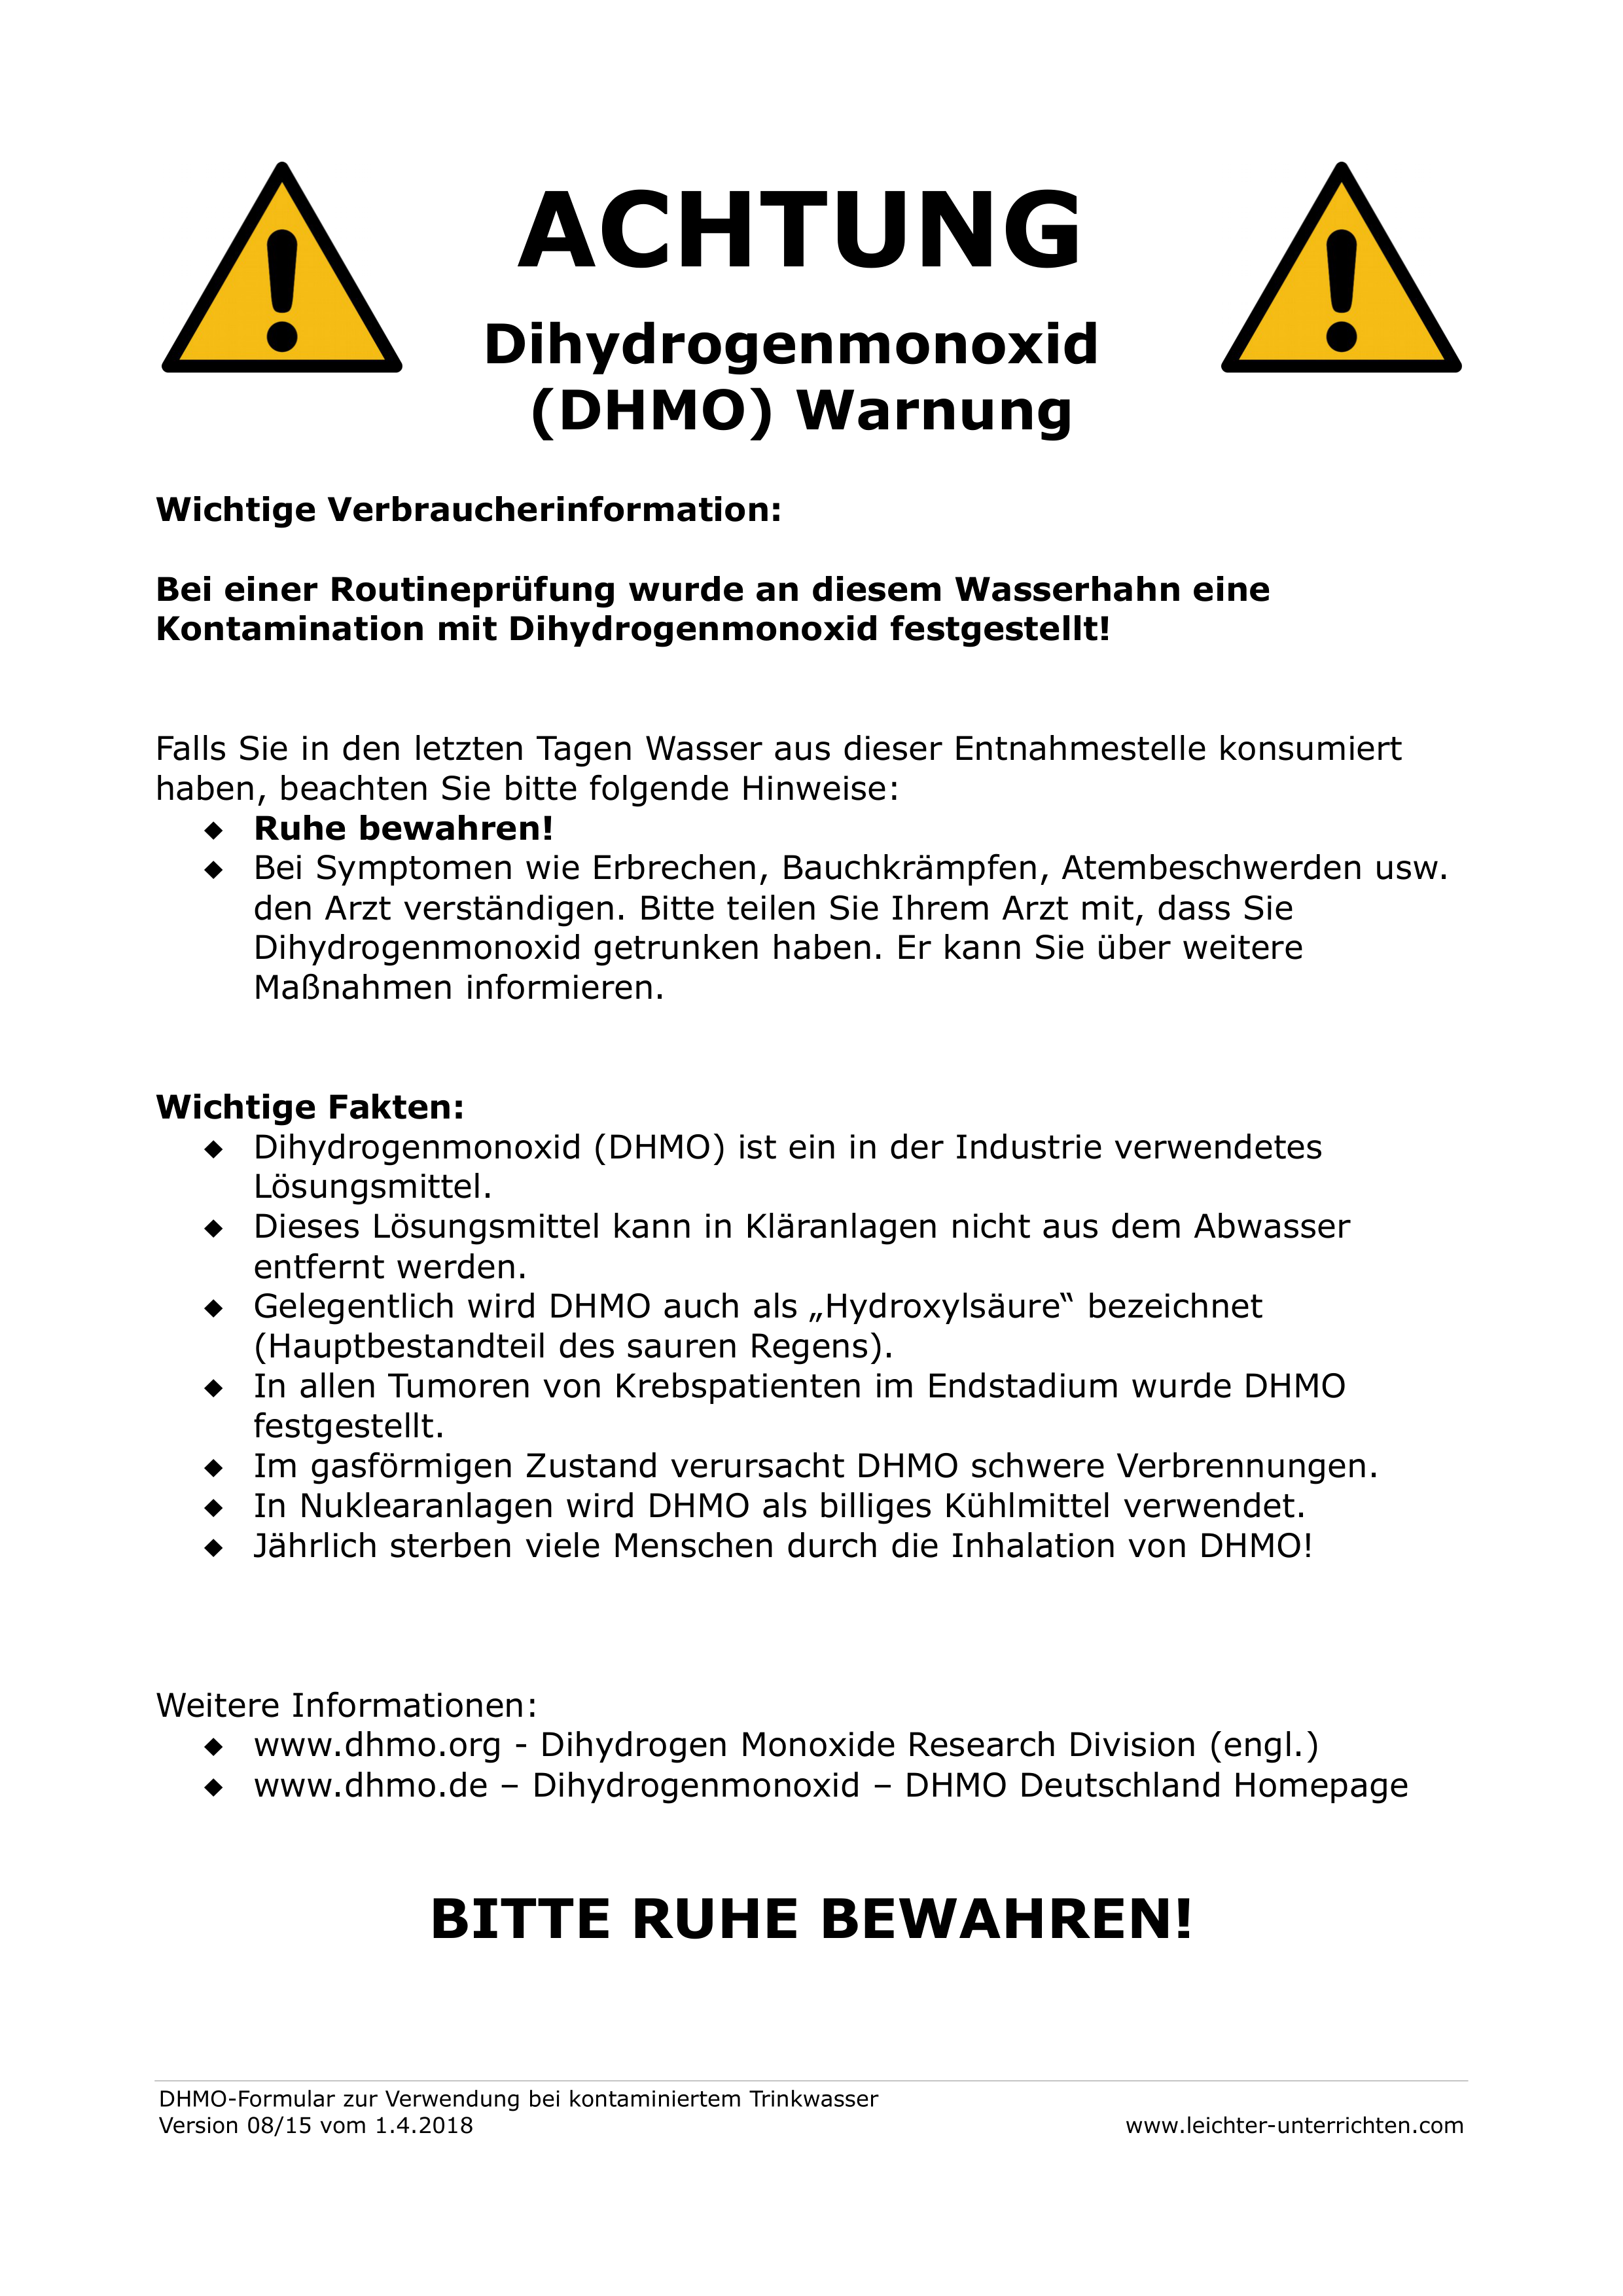 Gefahr Durch Dihydrogenmonoxid Dhmo Plakat Unterrichtsmaterial Im Fach Chemie Chemieunterricht Lernen Chemie